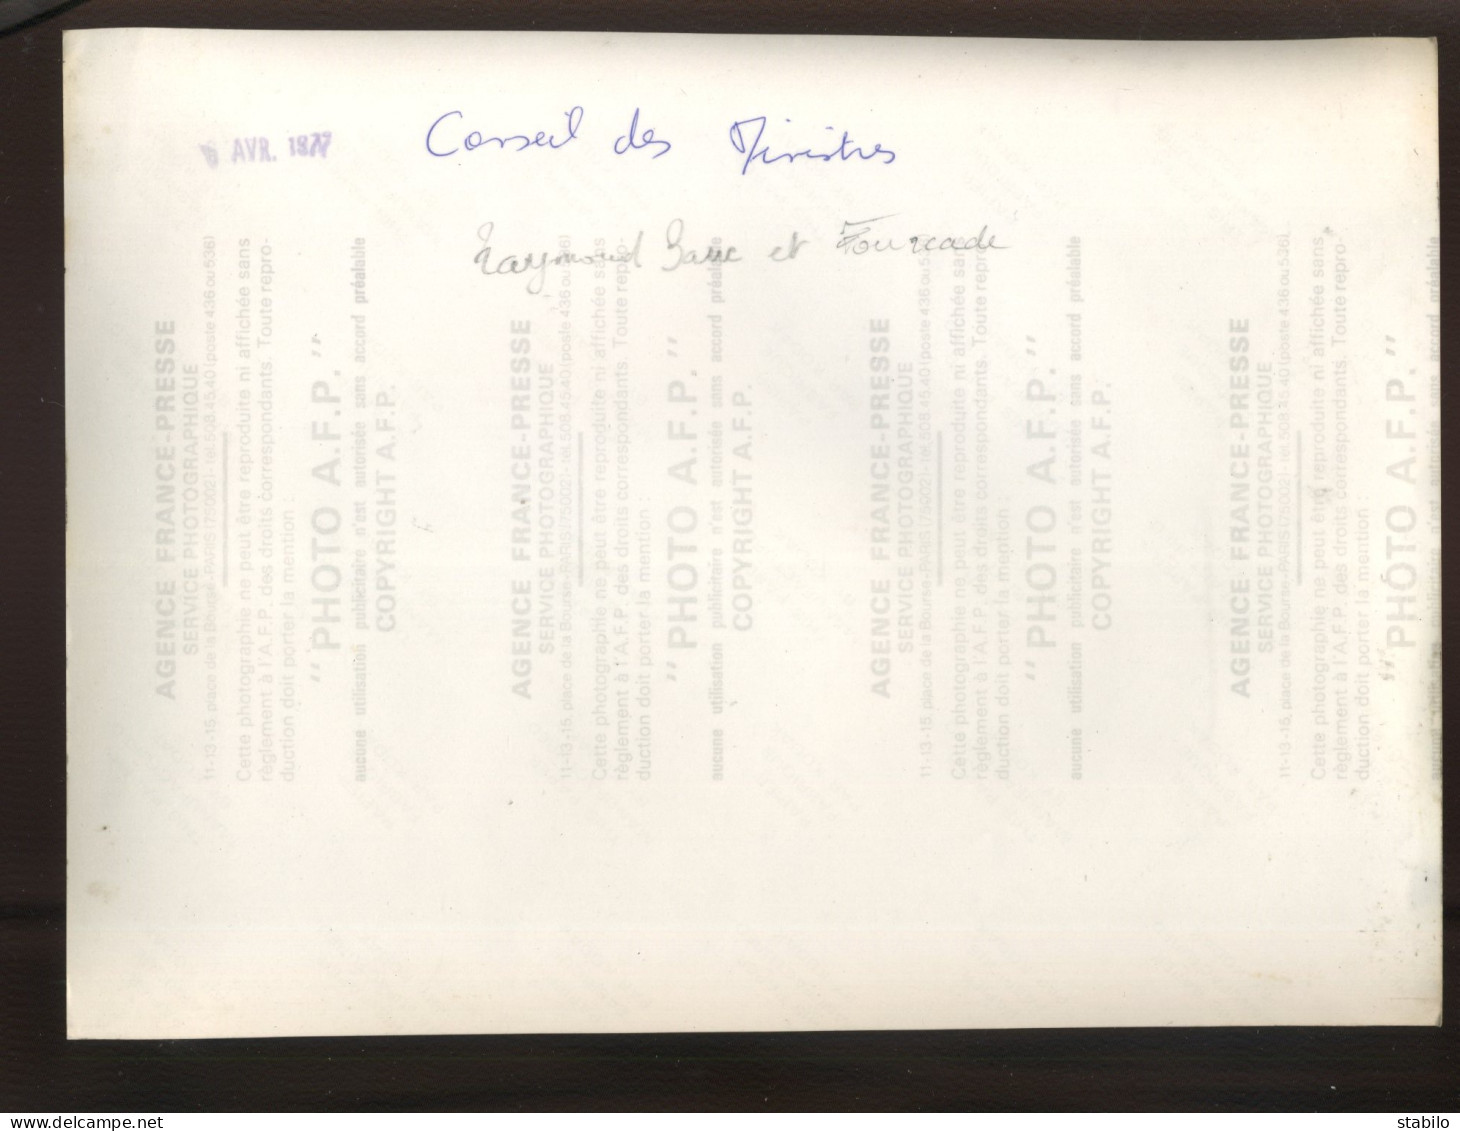 POLITIQUE - RAYMOND BARRE ET FOURCADE - CONSEIL DES MINISTRES AVRIL 1977 - FORMAT 24 X 17.5 CM - Célébrités